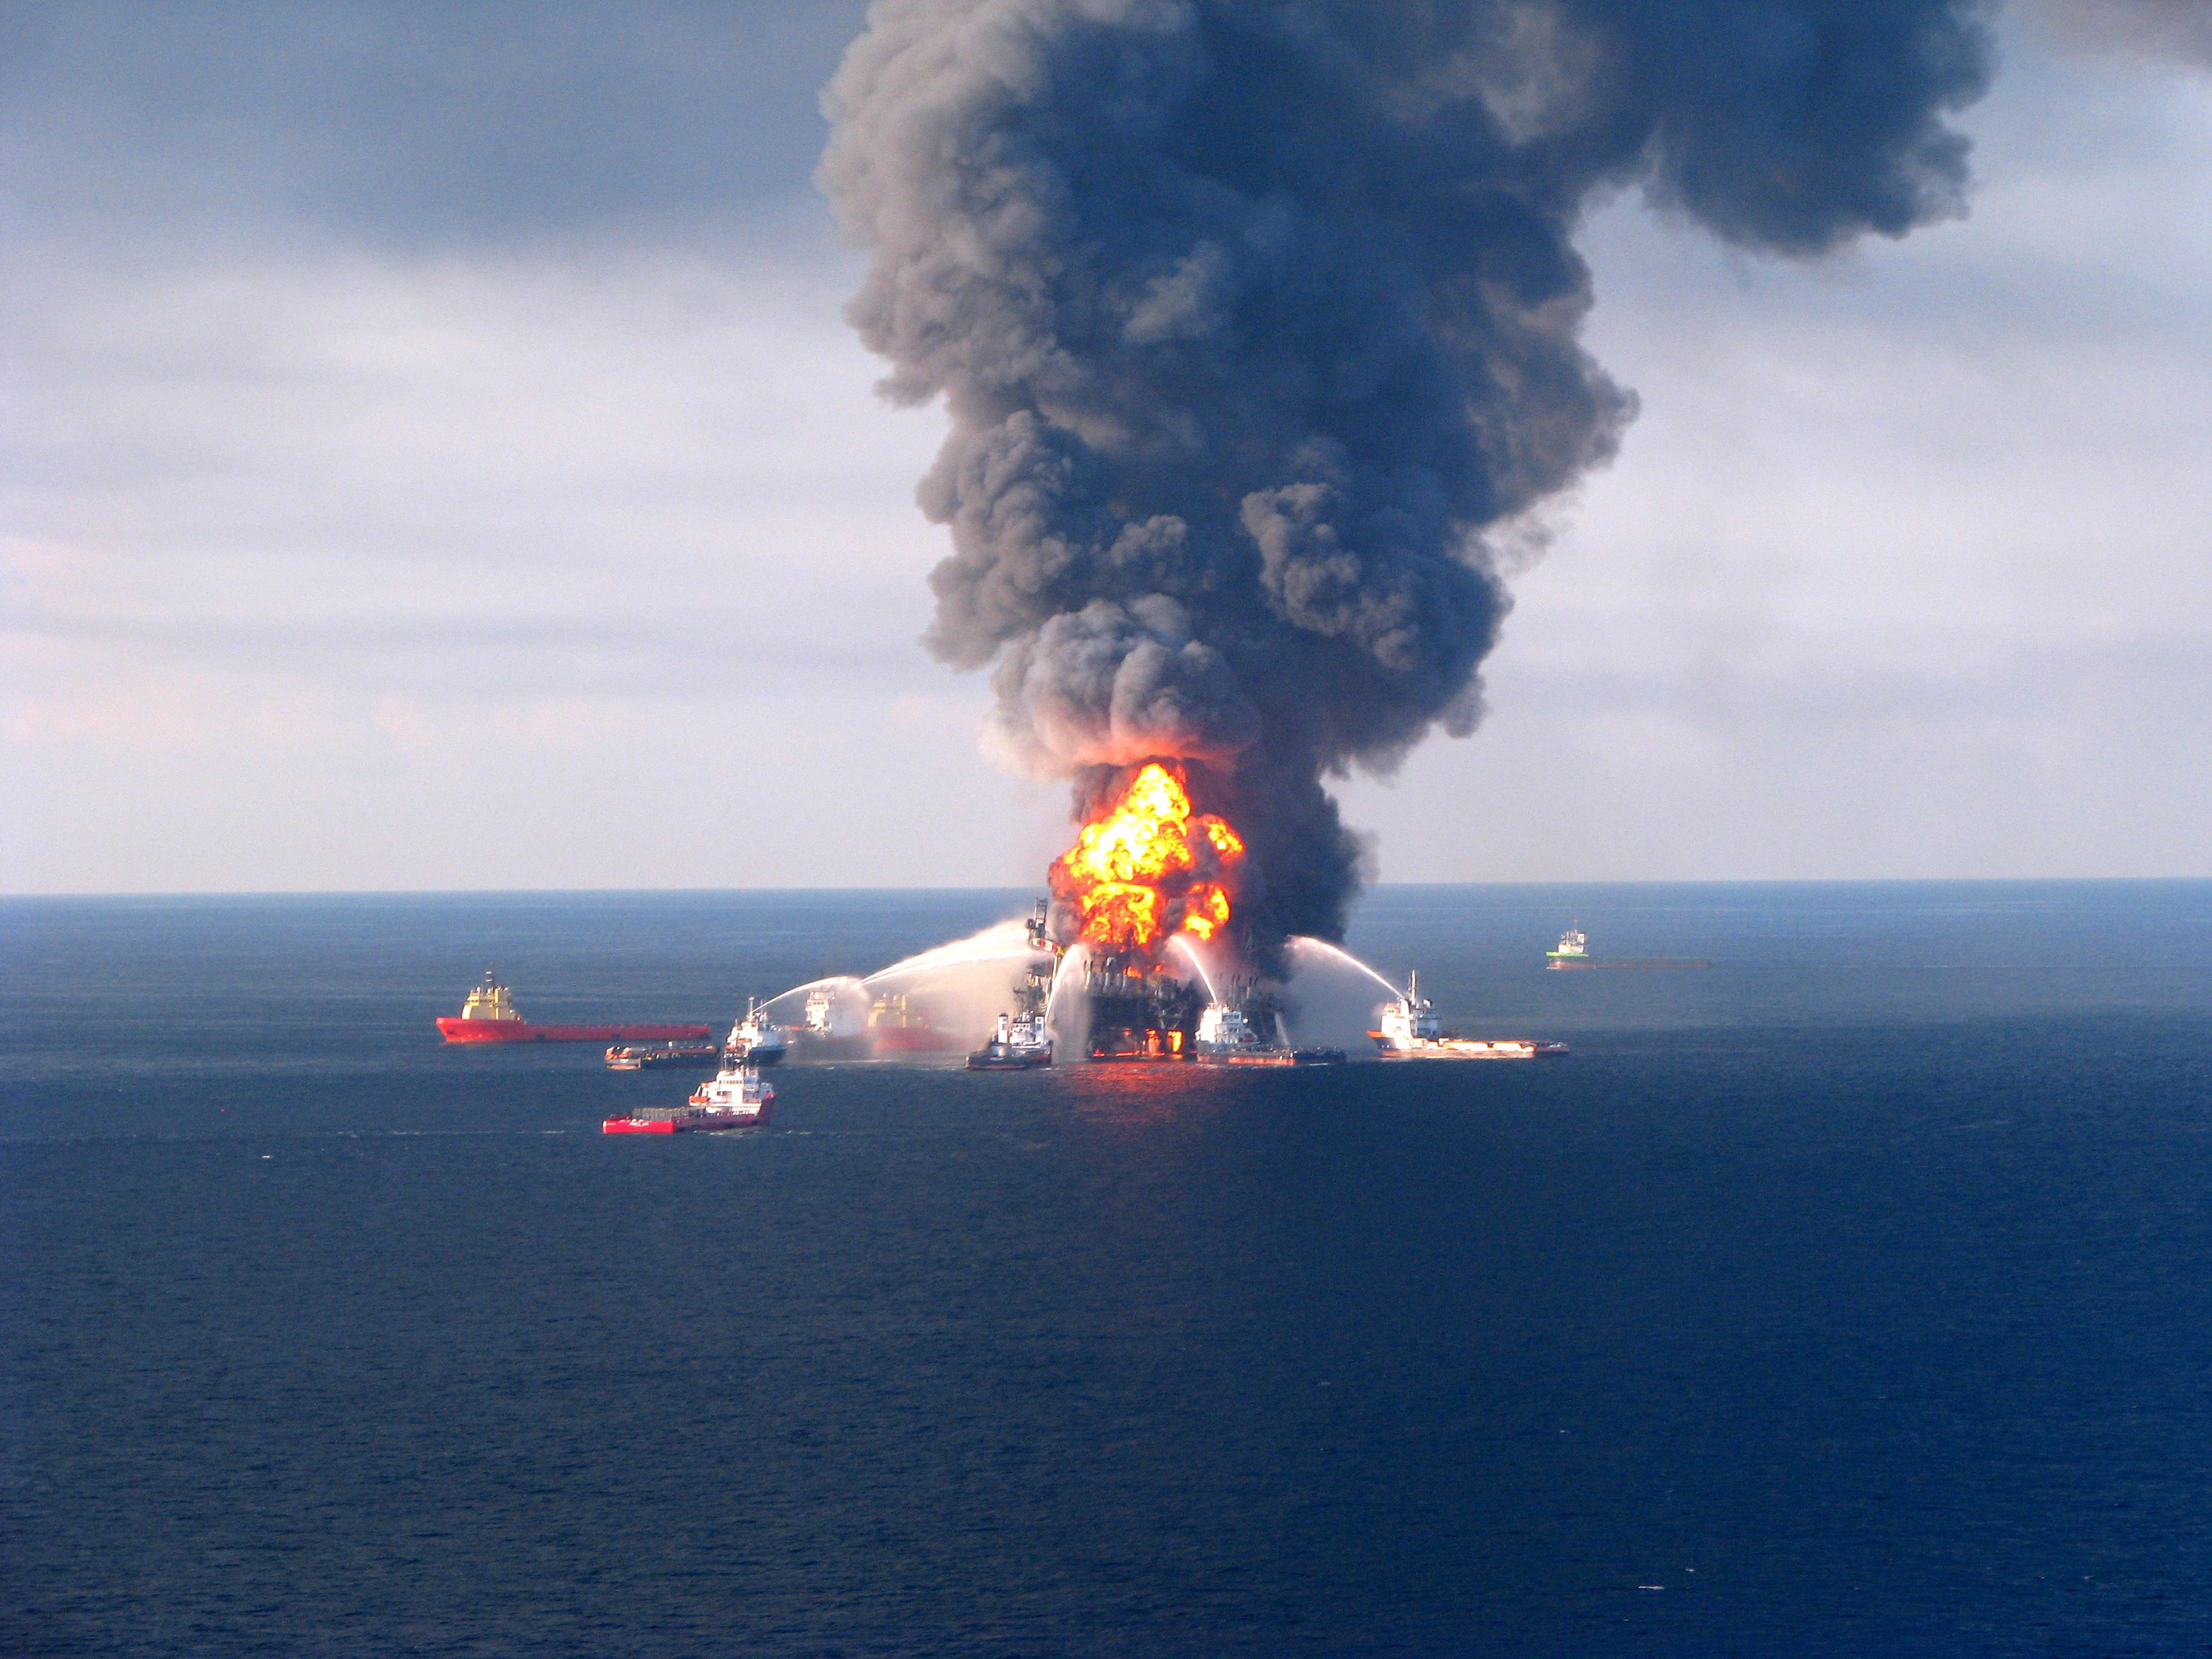 Взрыв береговой. Взрыв платформы Deepwater Horizon. Взрыв нефтяной платформы Deepwater Horizon в мексиканском заливе. Нефтяная катастрофа в мексиканском заливе 2010. Разлив нефти в мексиканском заливе 1979.